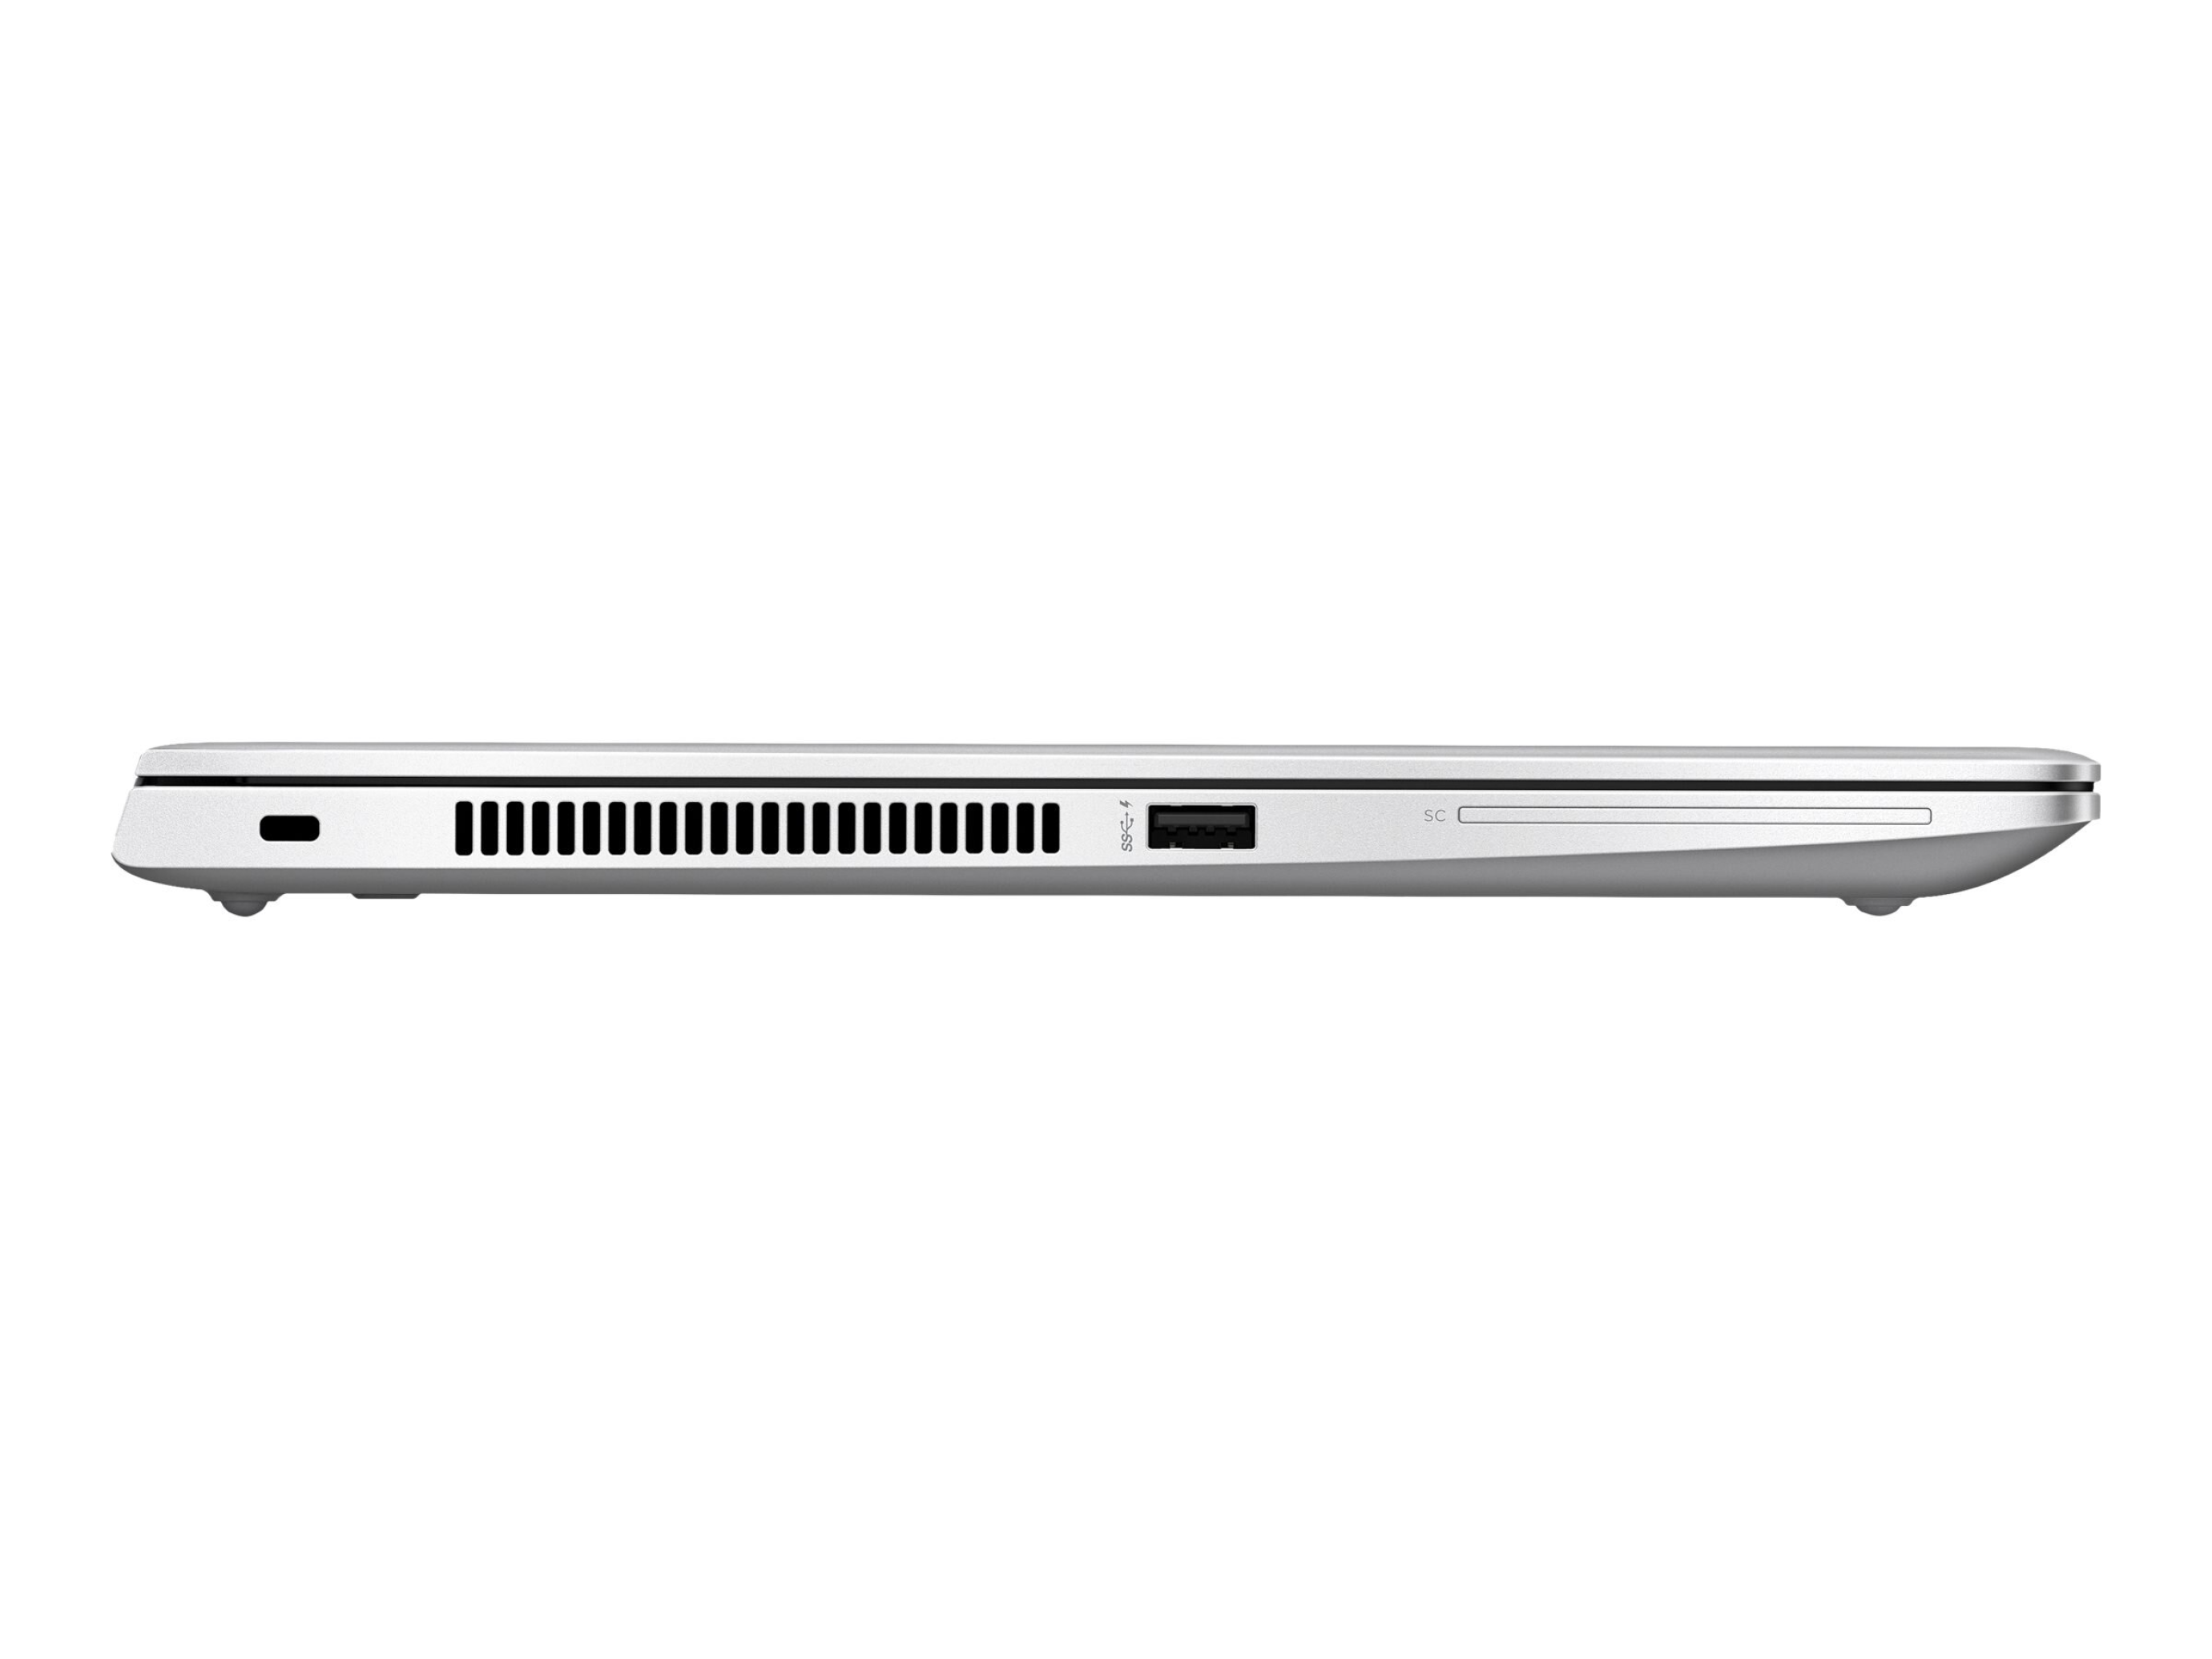  قیمت لپ تاپ HP EliteBook 745 G6 Ryzen 5 5300U | لاکچری لپ تاپ 